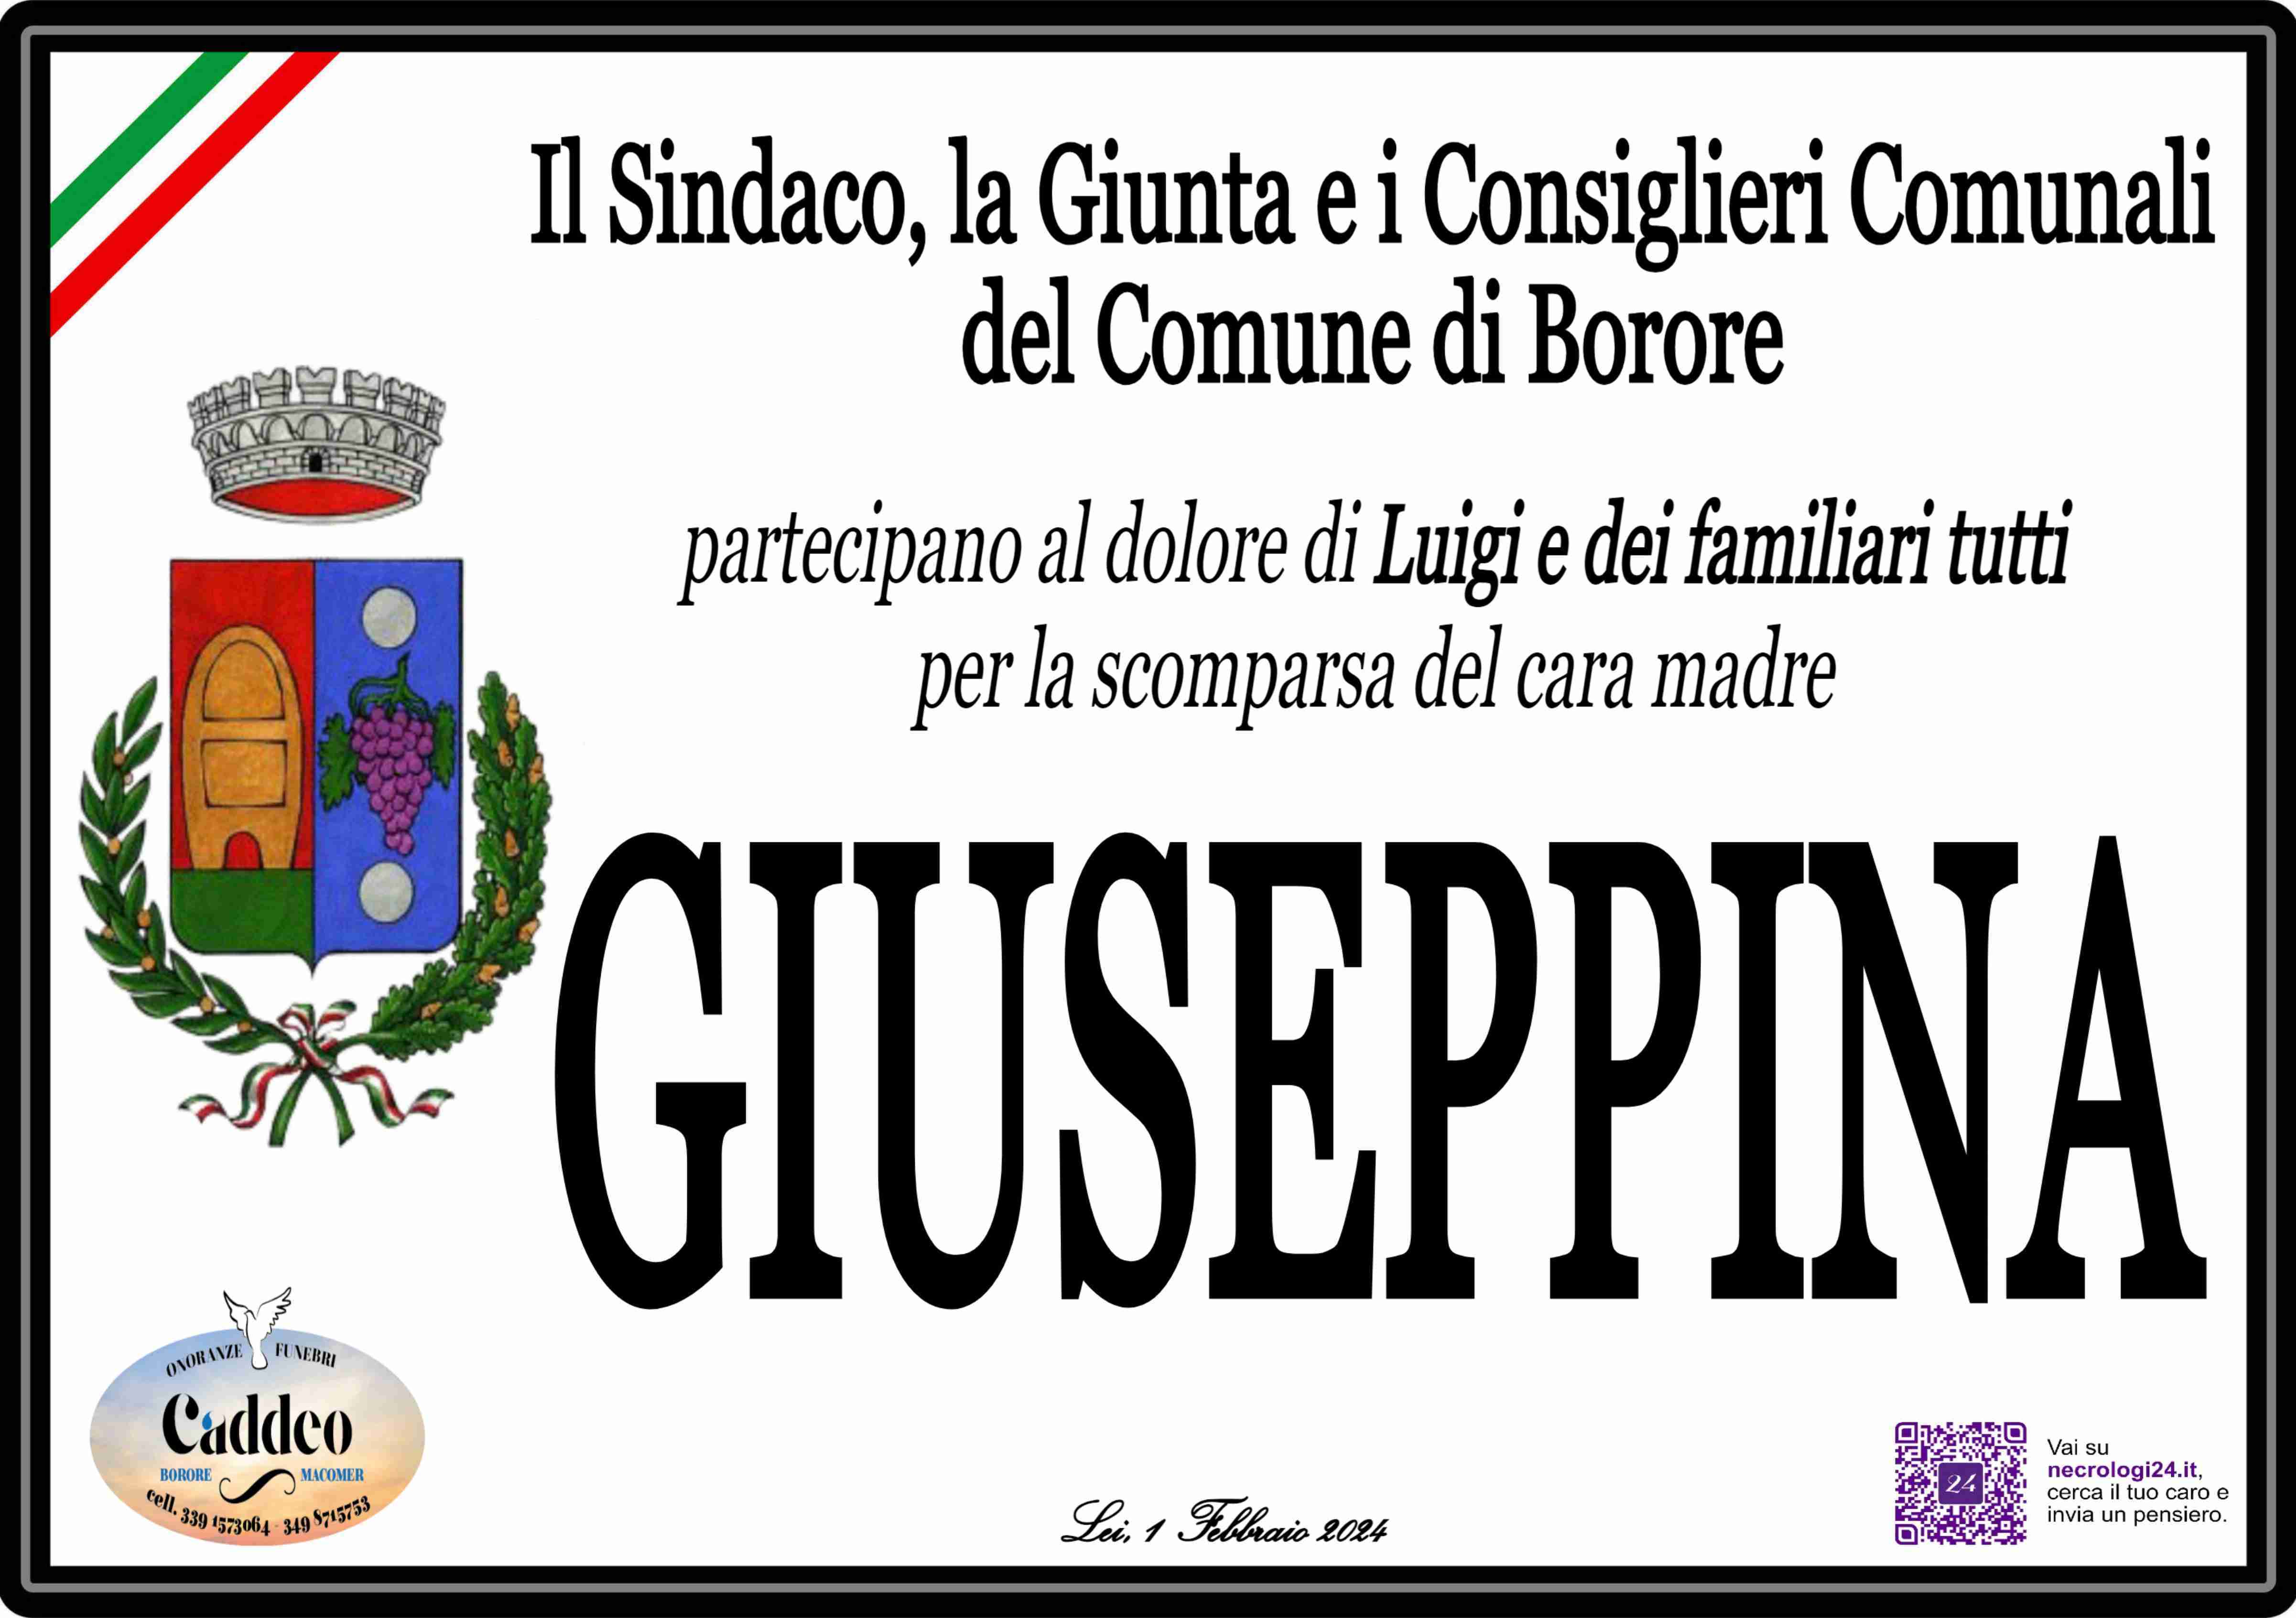 Giuseppina